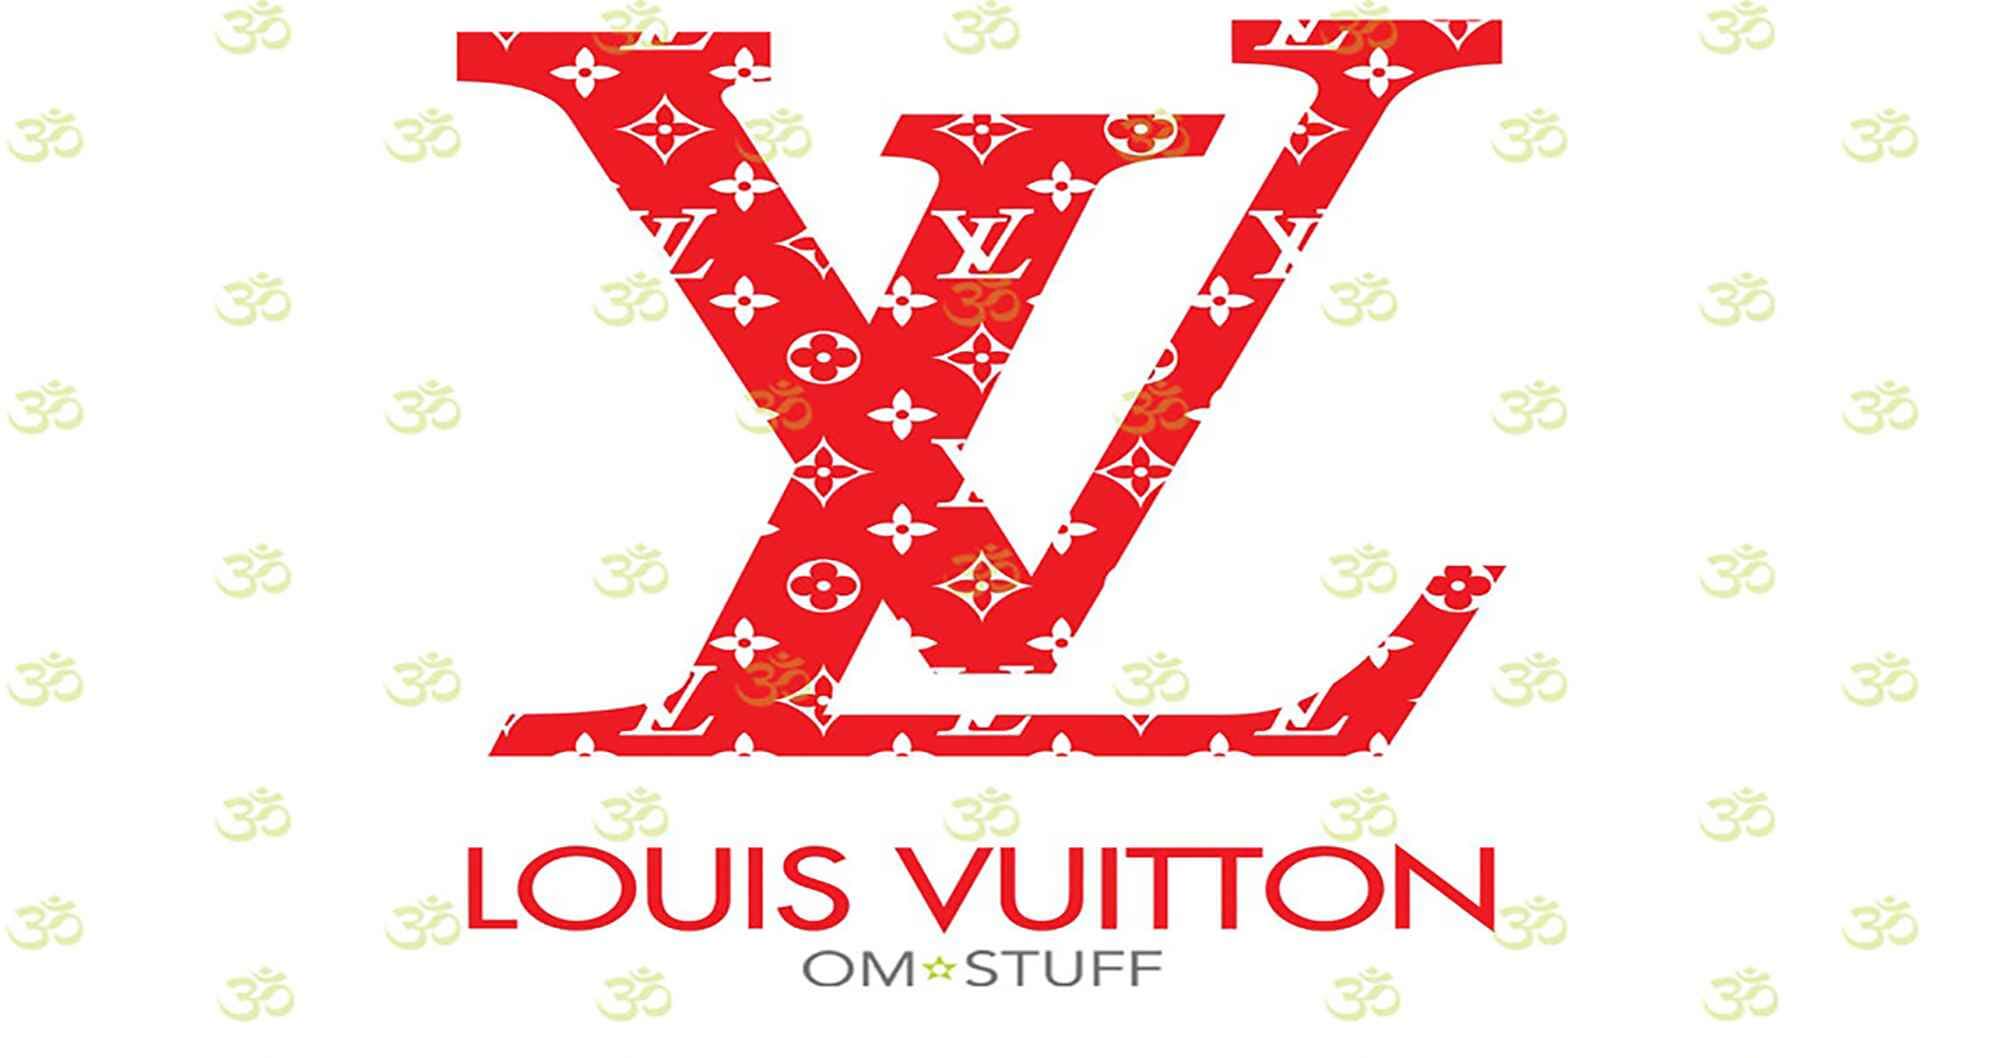 Louis Vuitton SVG Bundle, Louis Vuitton SVG, Louis Vuitton ...